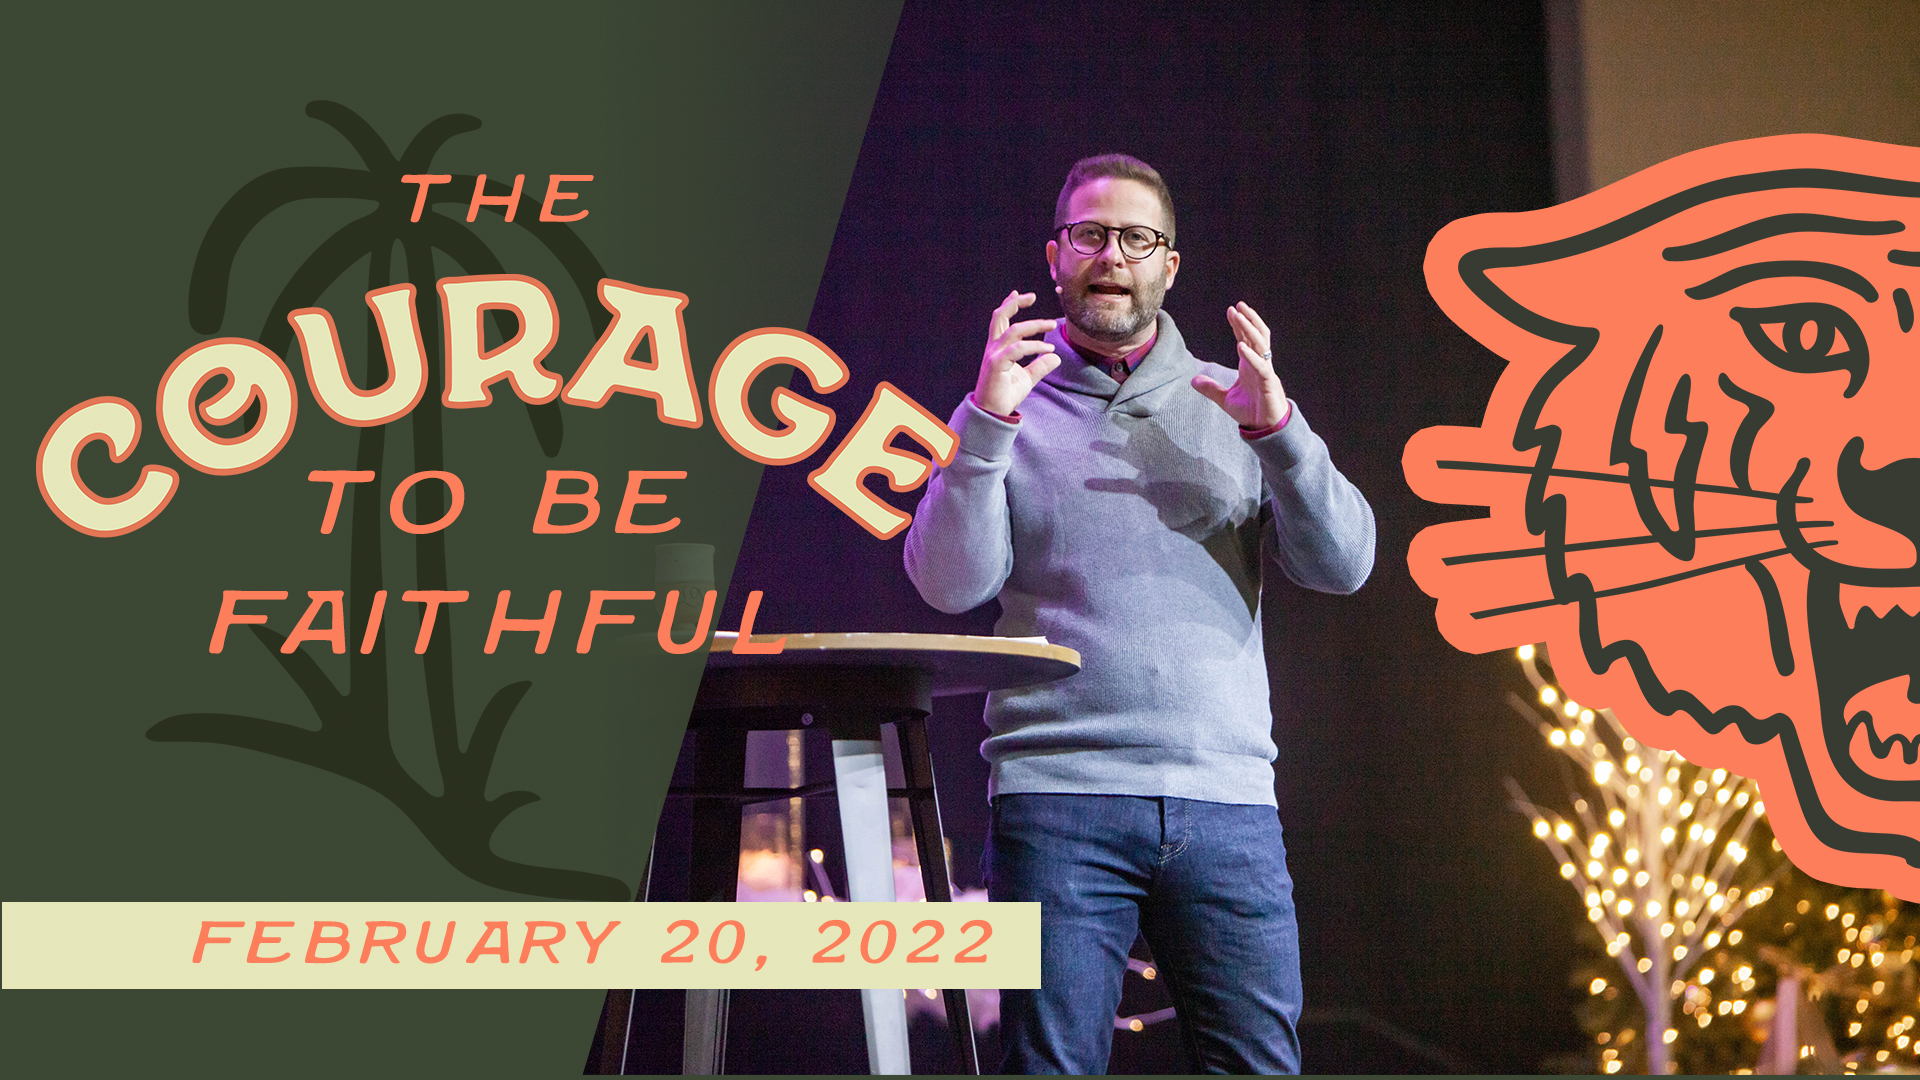 Courage to Be Faithful Image